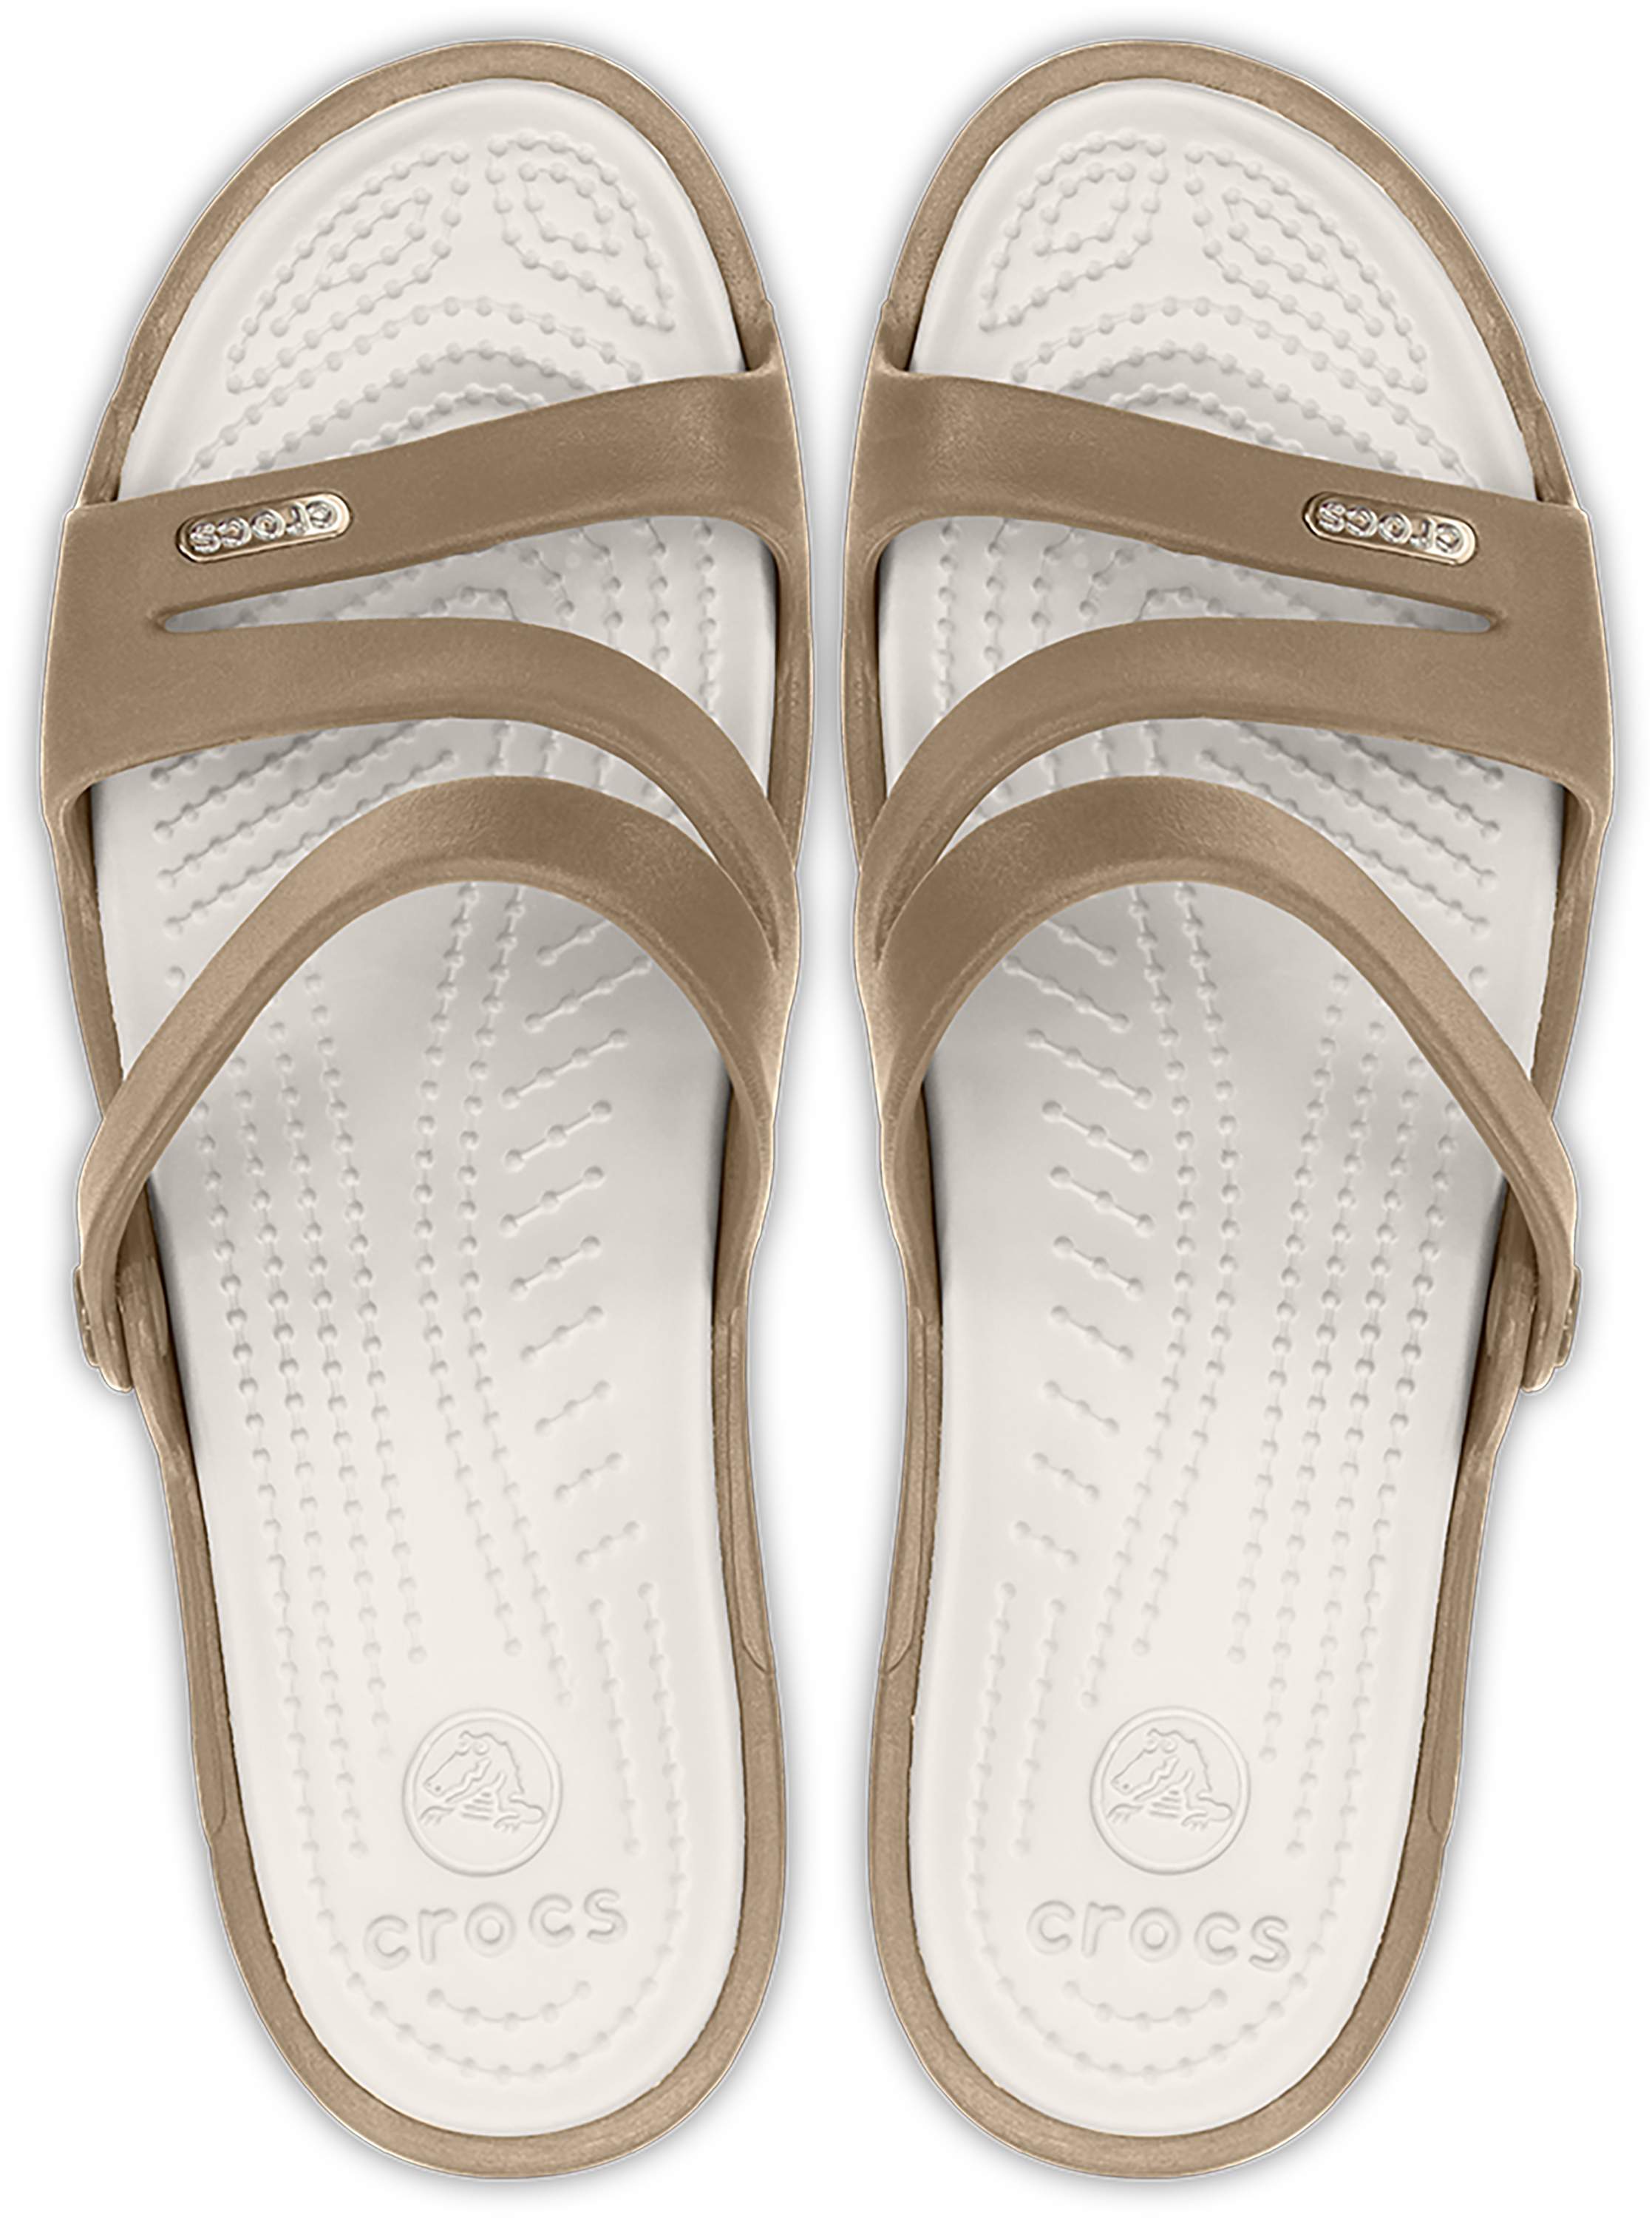 crocs patricia sandals